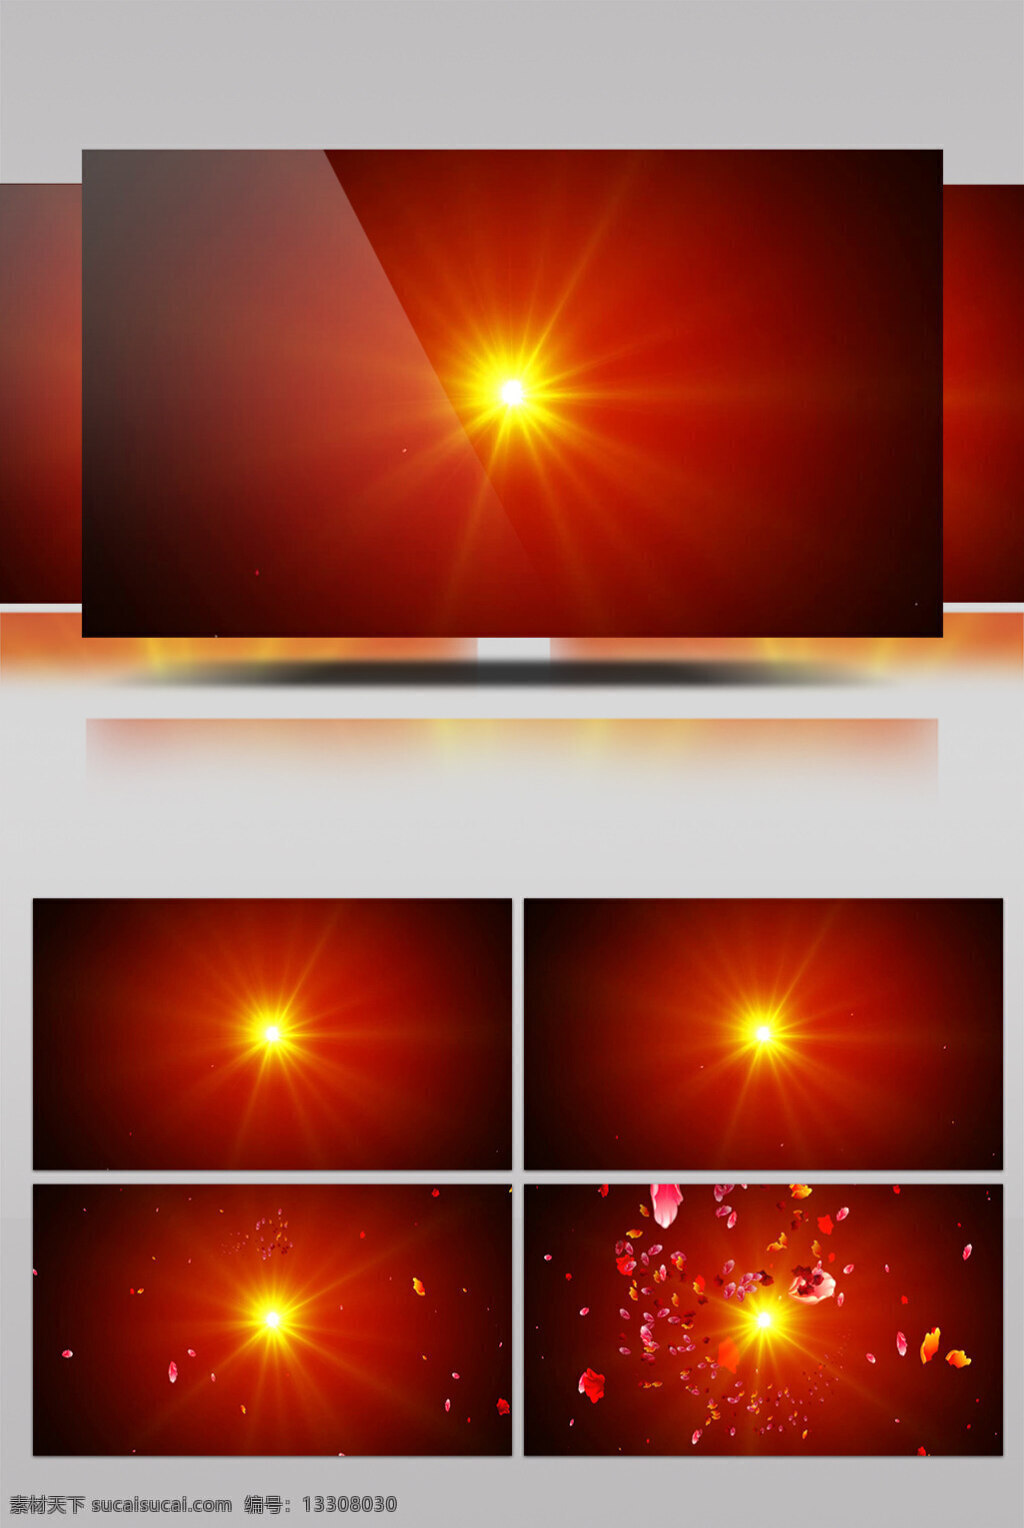 太阳 红 视频 红色太阳 绚丽红色 画面意境 动态抽象 高清视频素材 特效视频素材